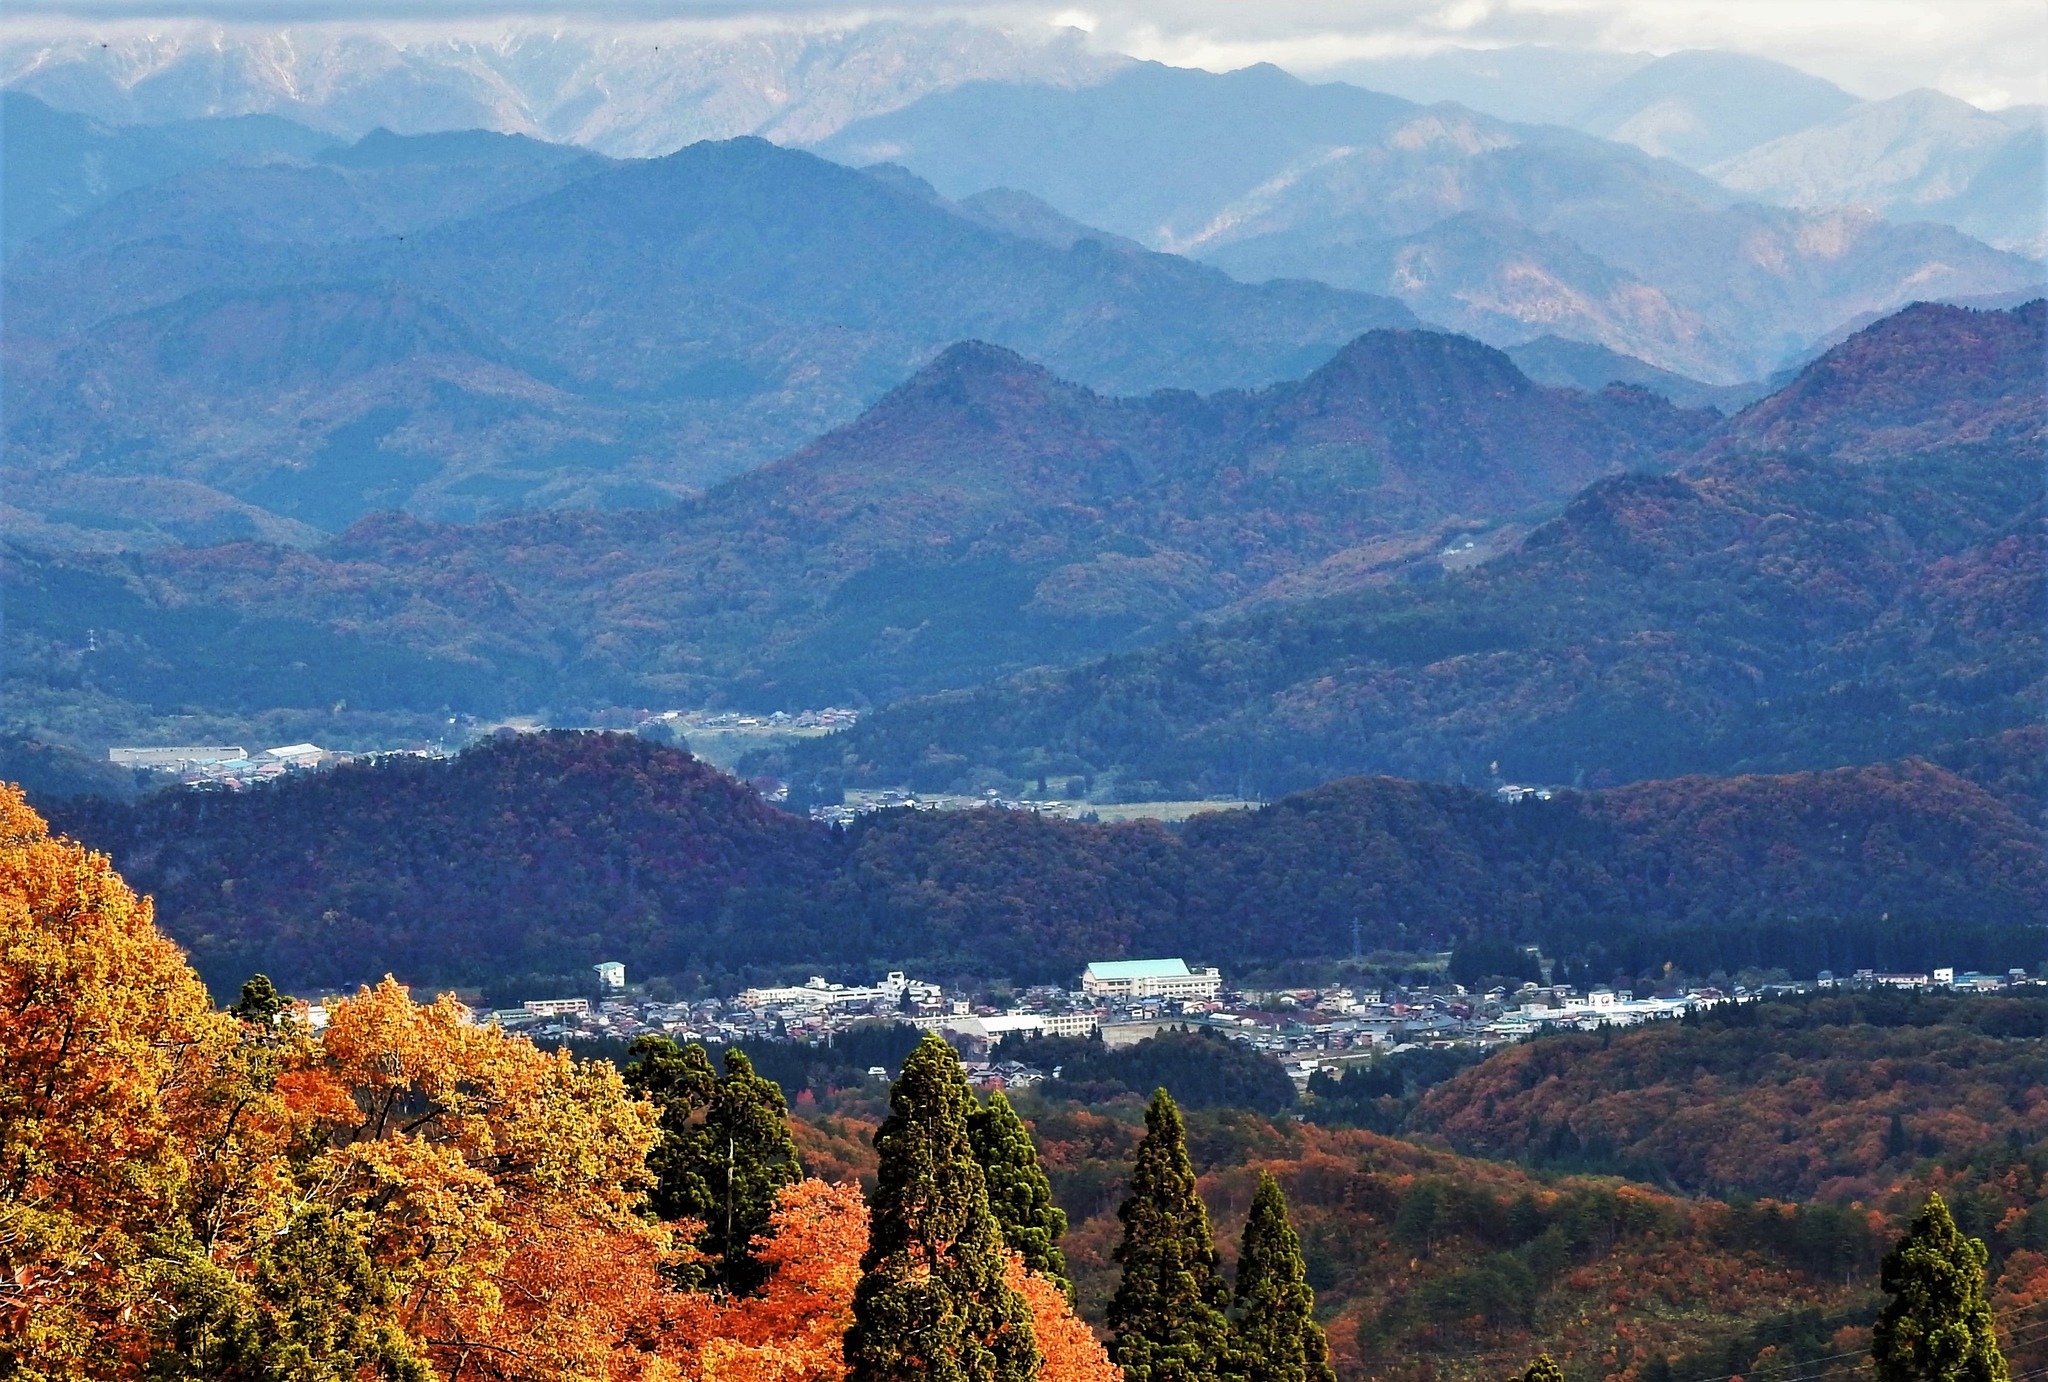 津川盆地の眺め 麒麟山、深戸富士、大日岳などの山塊が一望に!